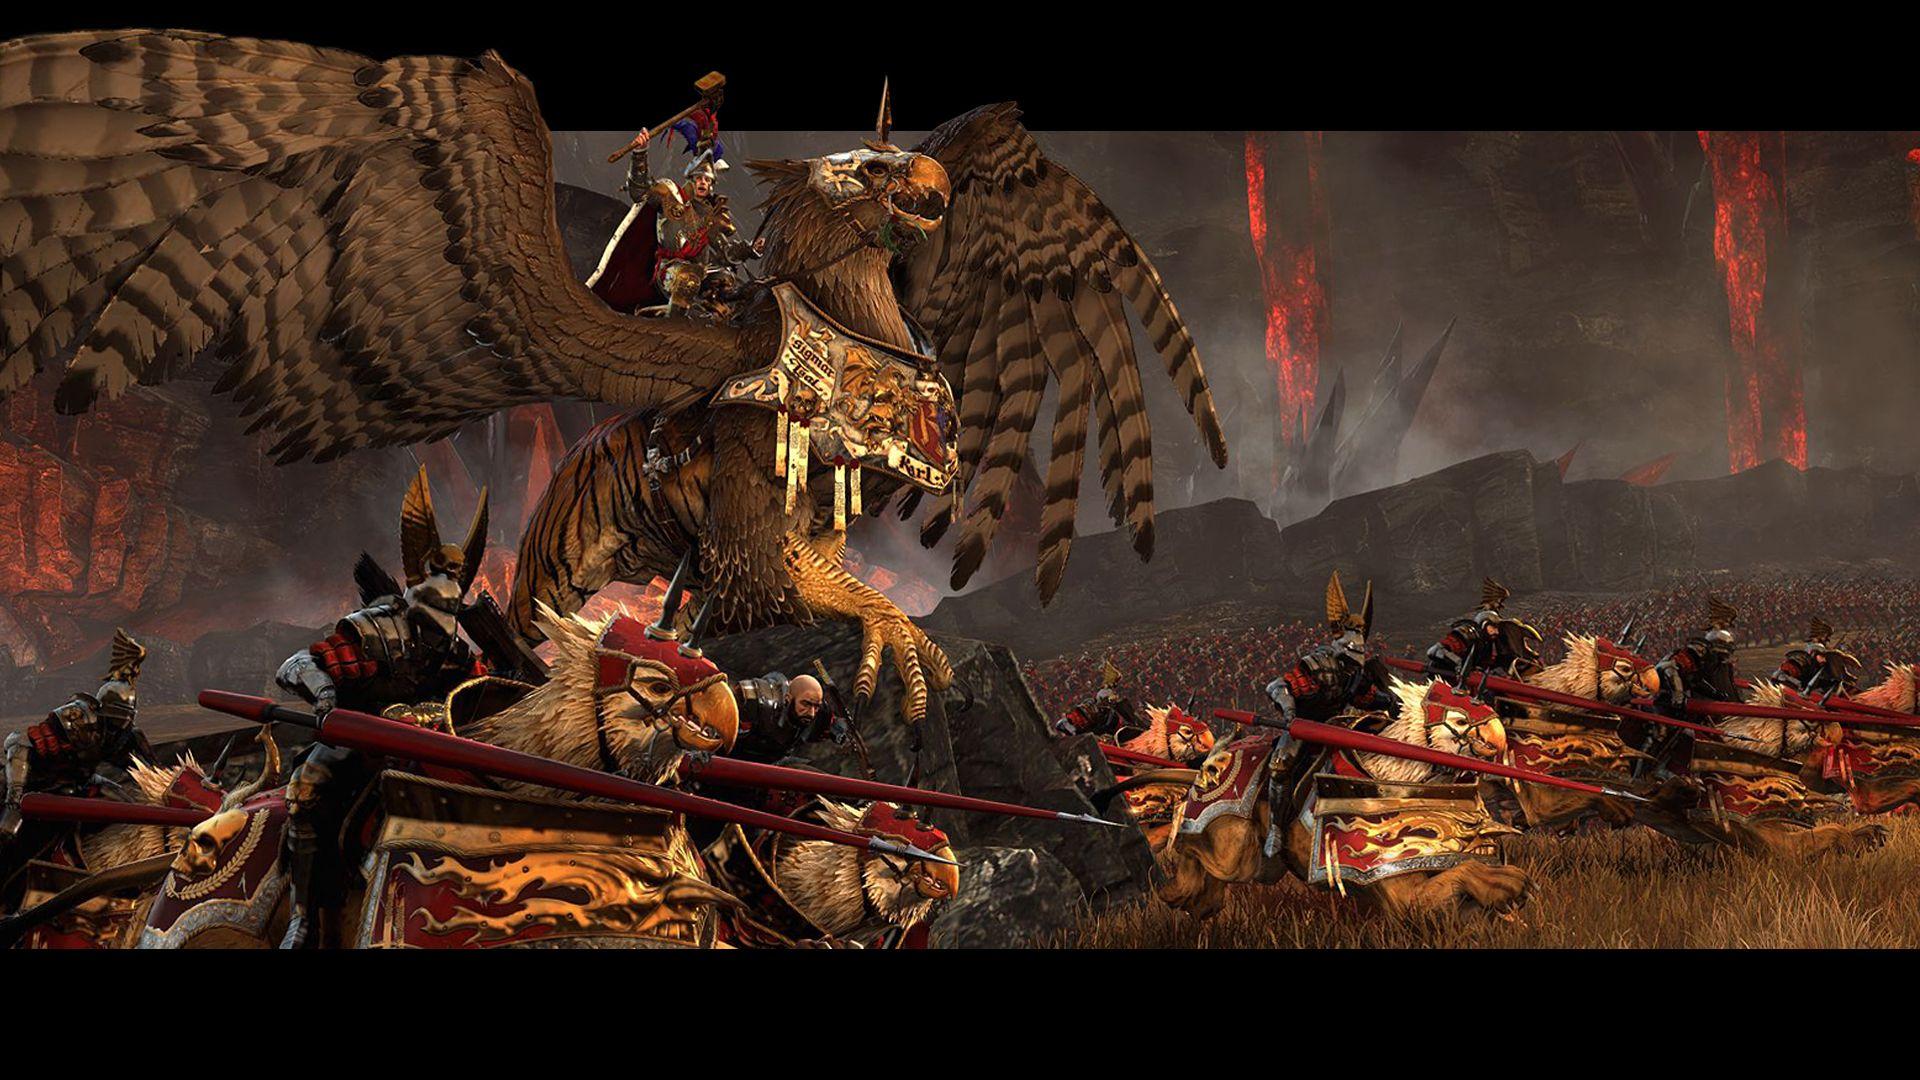 More Total War: Warhammer Wallpapers 1920x1080 : totalwar